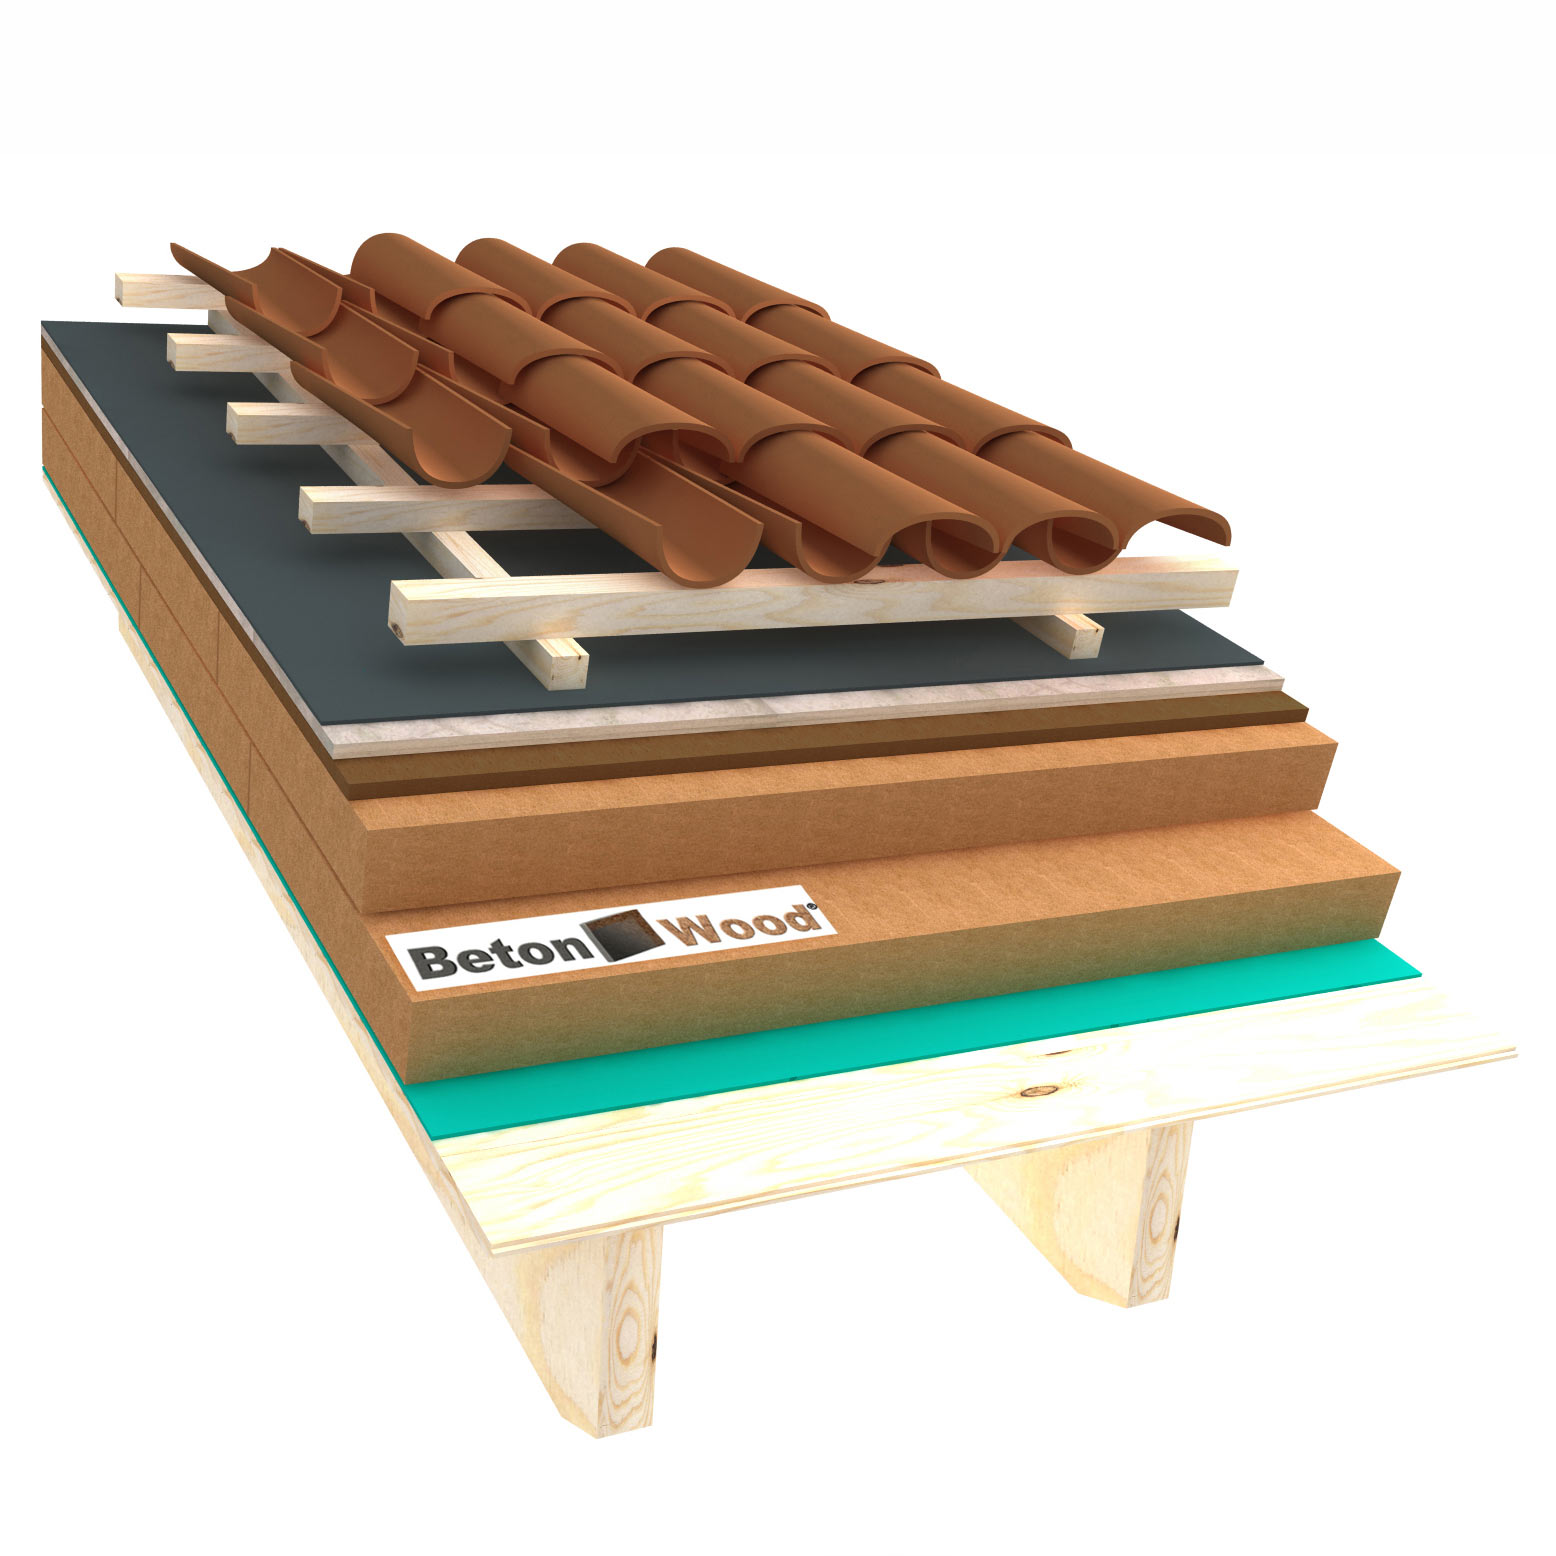 Fiber wood, Bitumfiber and BetonWood roof